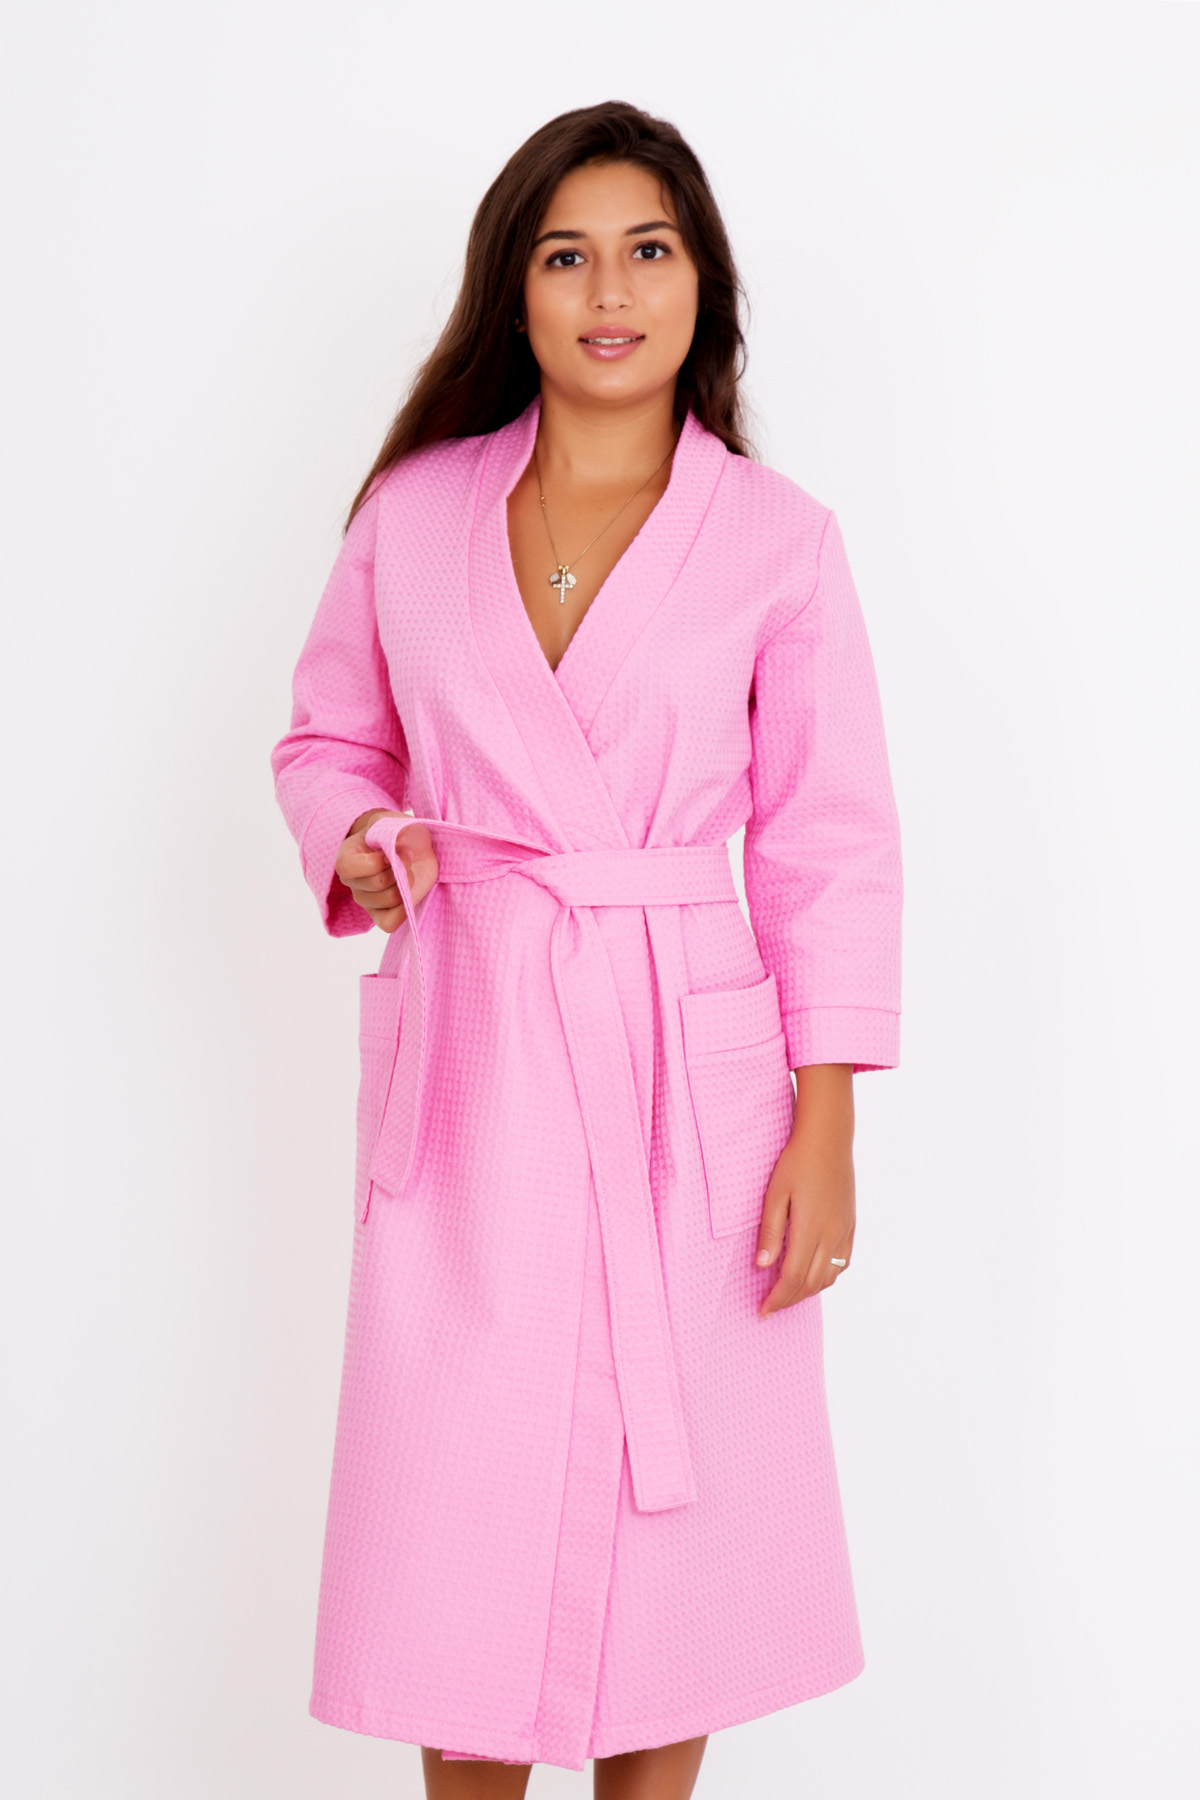 Купить халат в красноярске. Банный халат. Халат банный женский. Халат банный розовый.